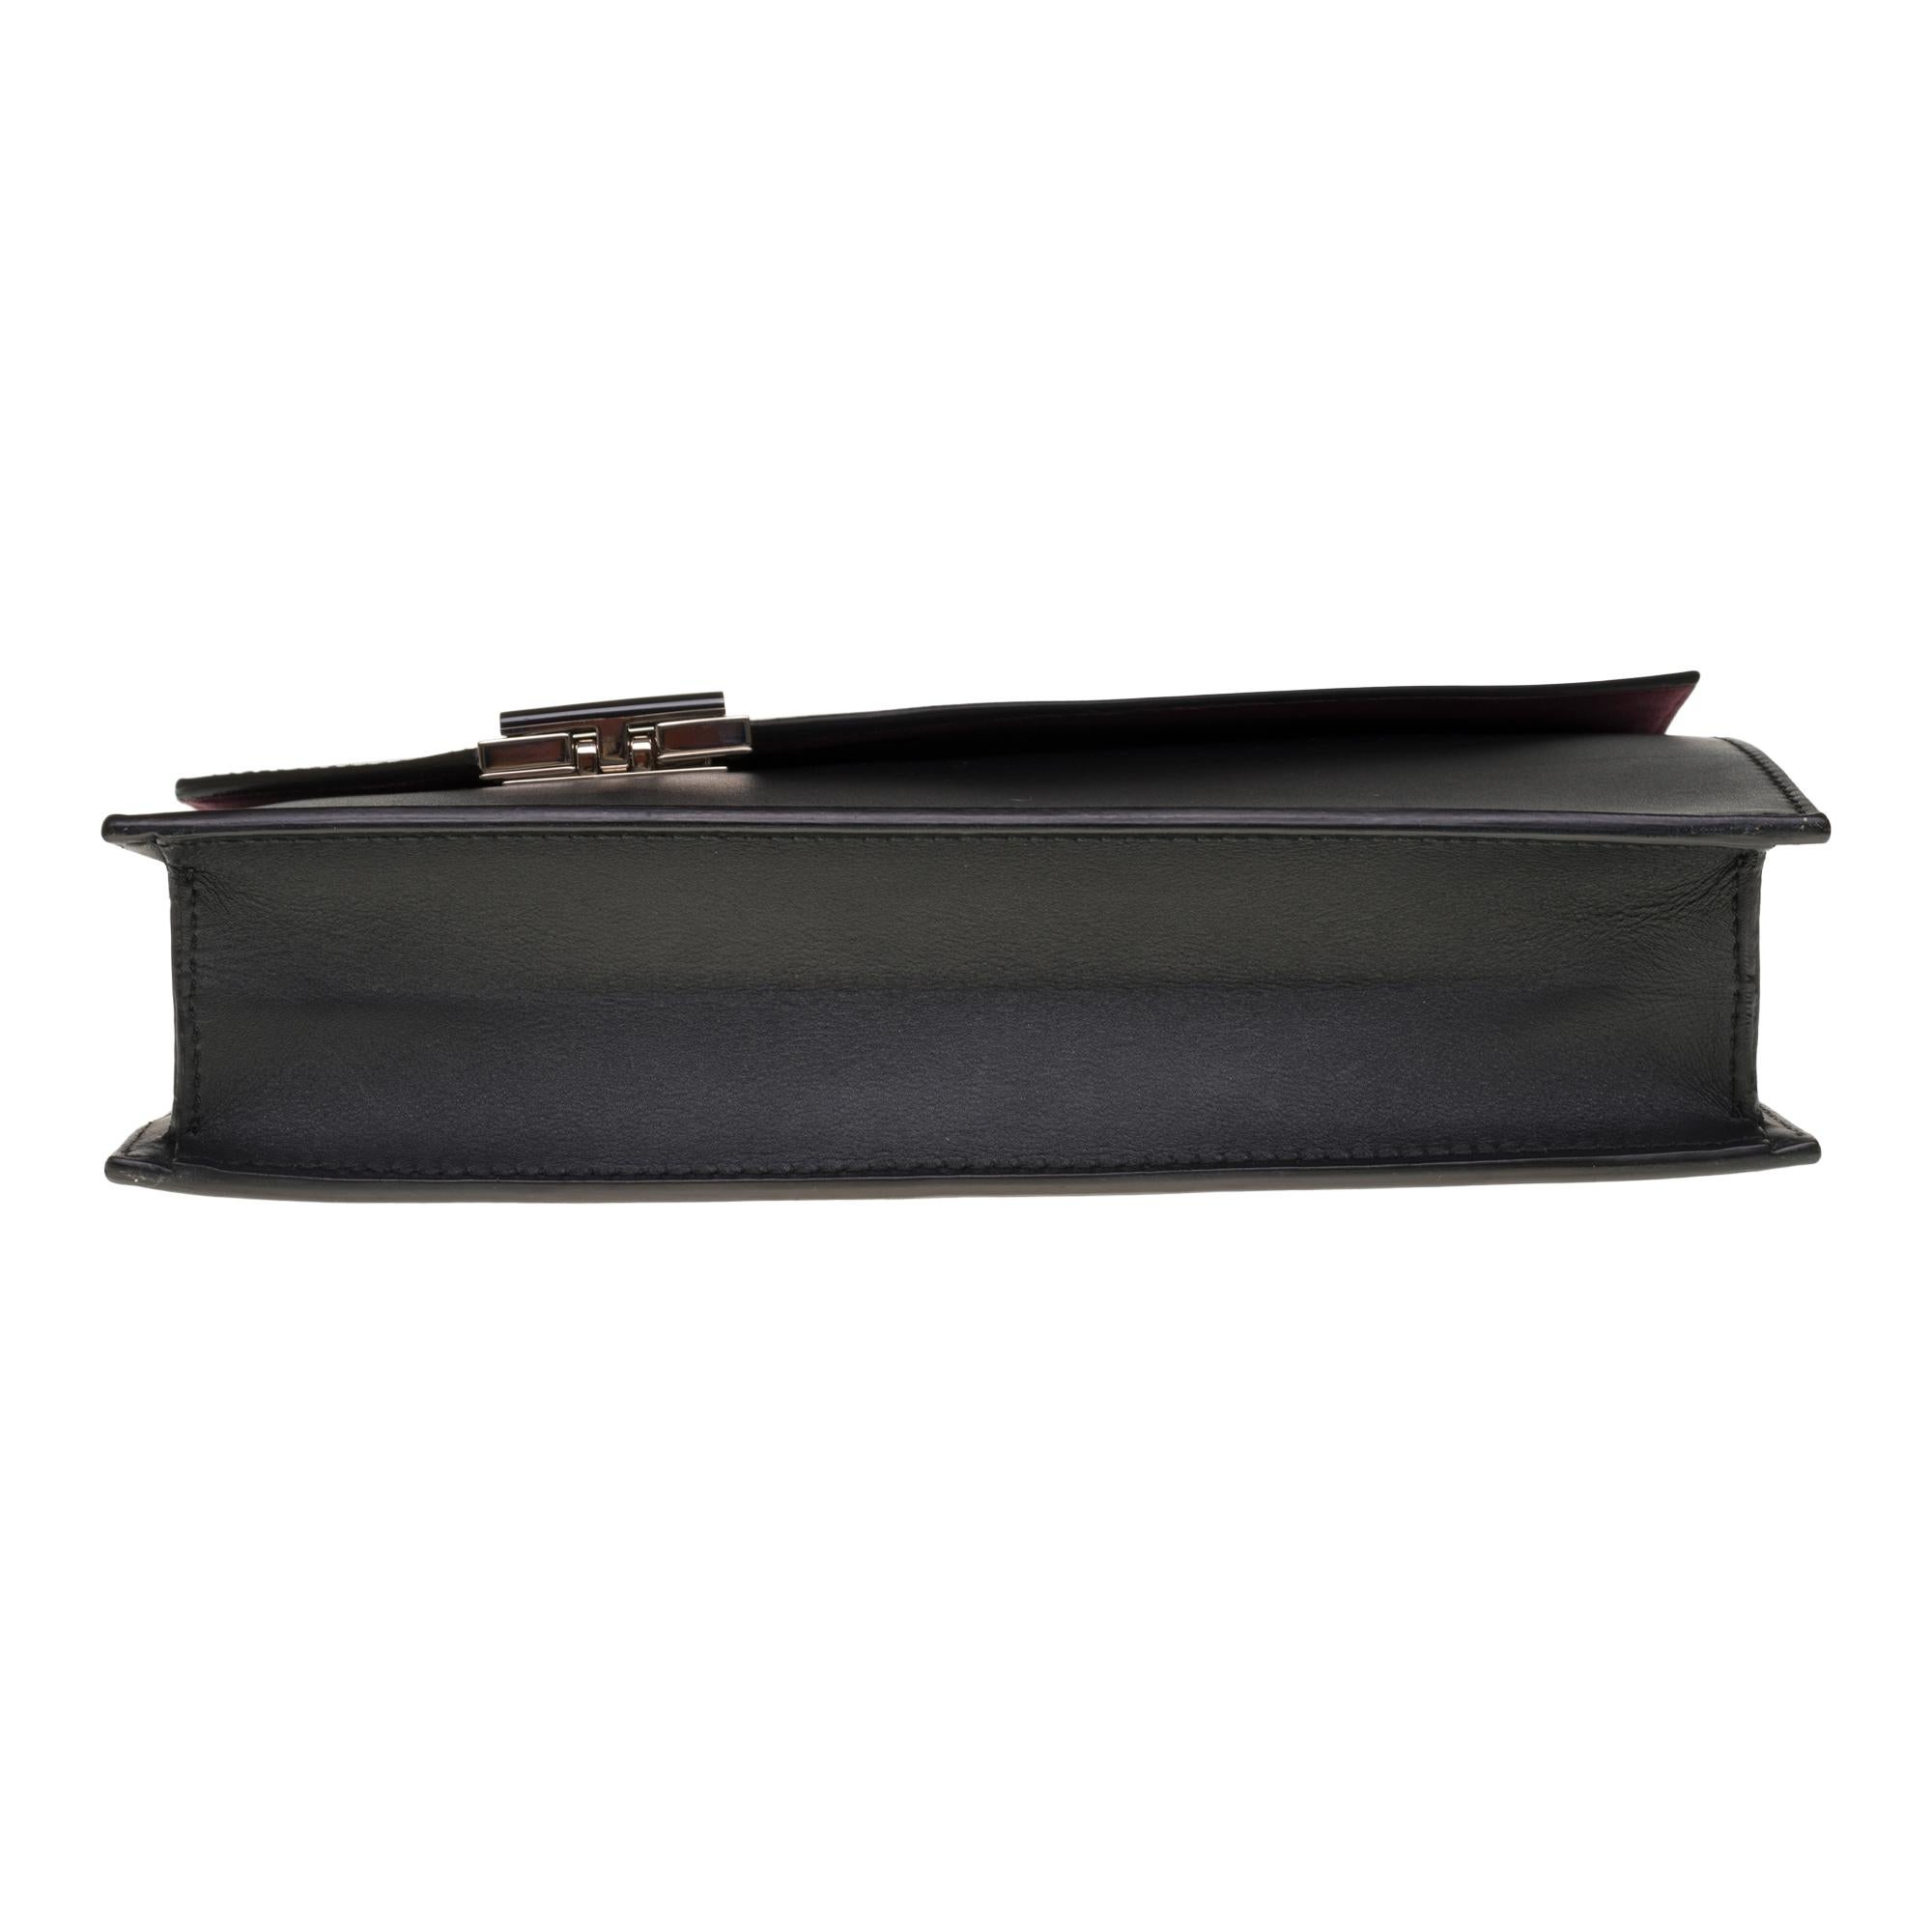 Amazing Cartier handbag/Clutch in black box leather, SHW 3